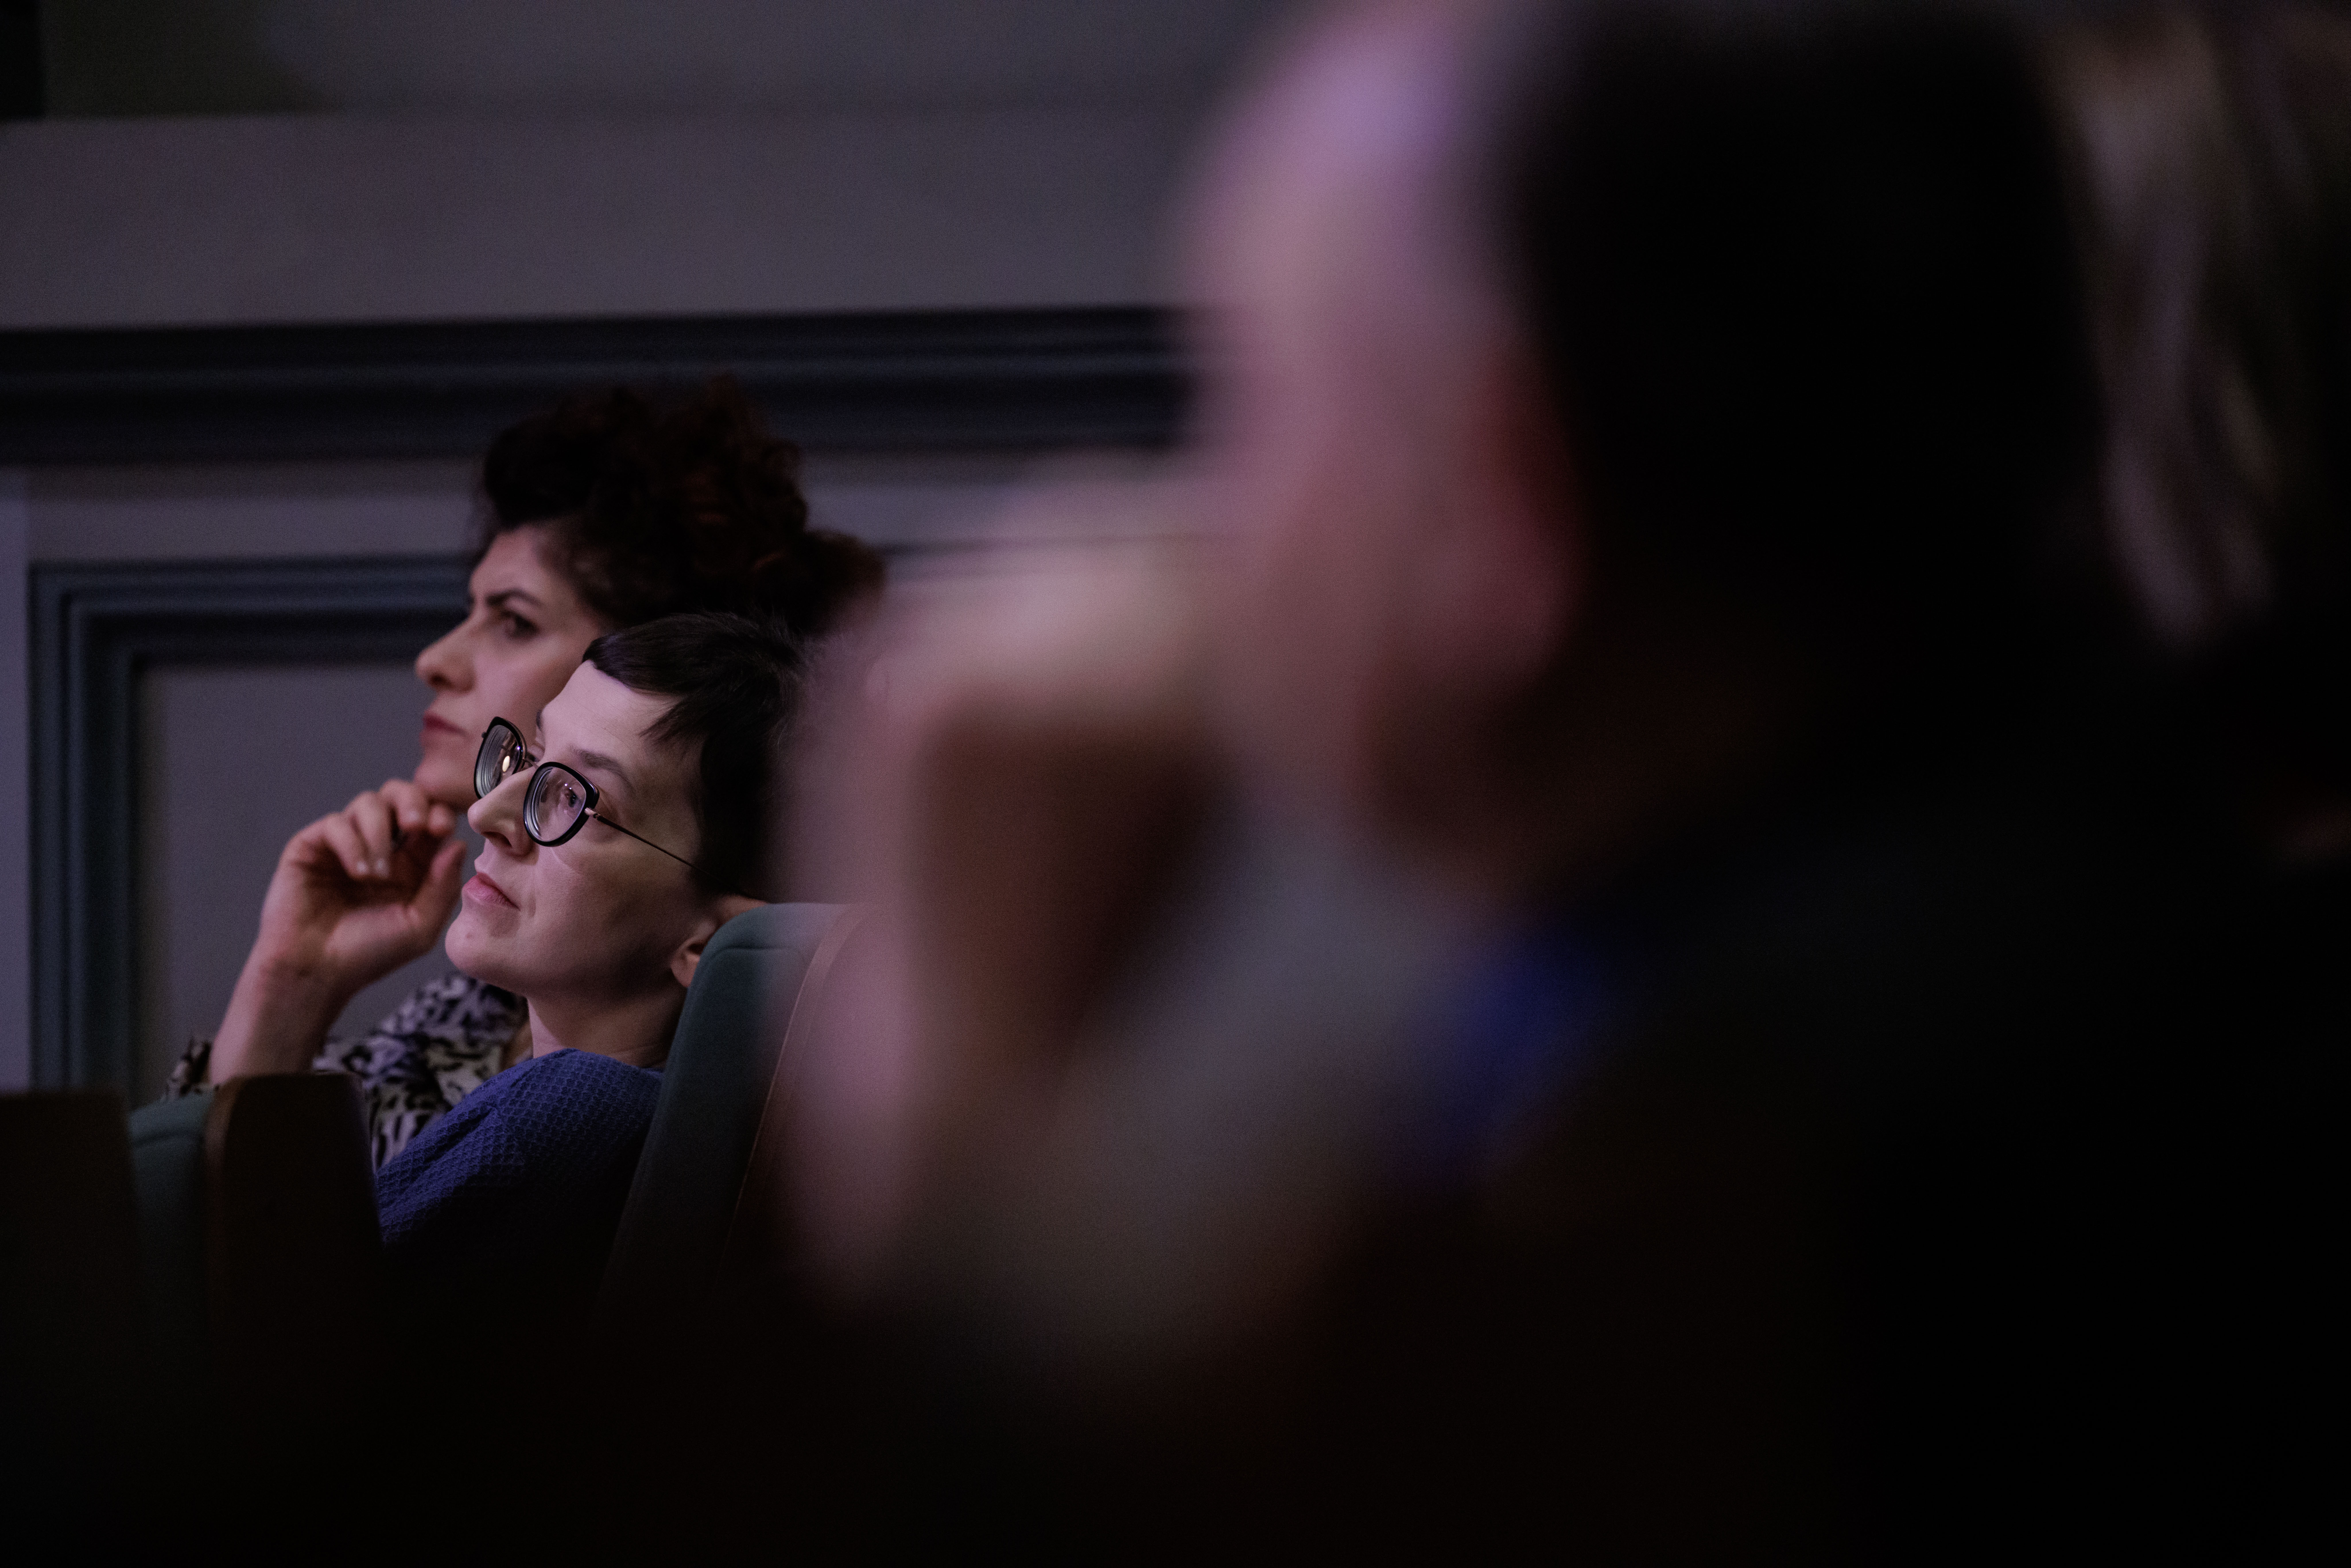 Osoby siedzące na widowni, na pierwszym planie rozmazany kontur osoby, na drugim planie wyraźnie widoczne dwie kobiety